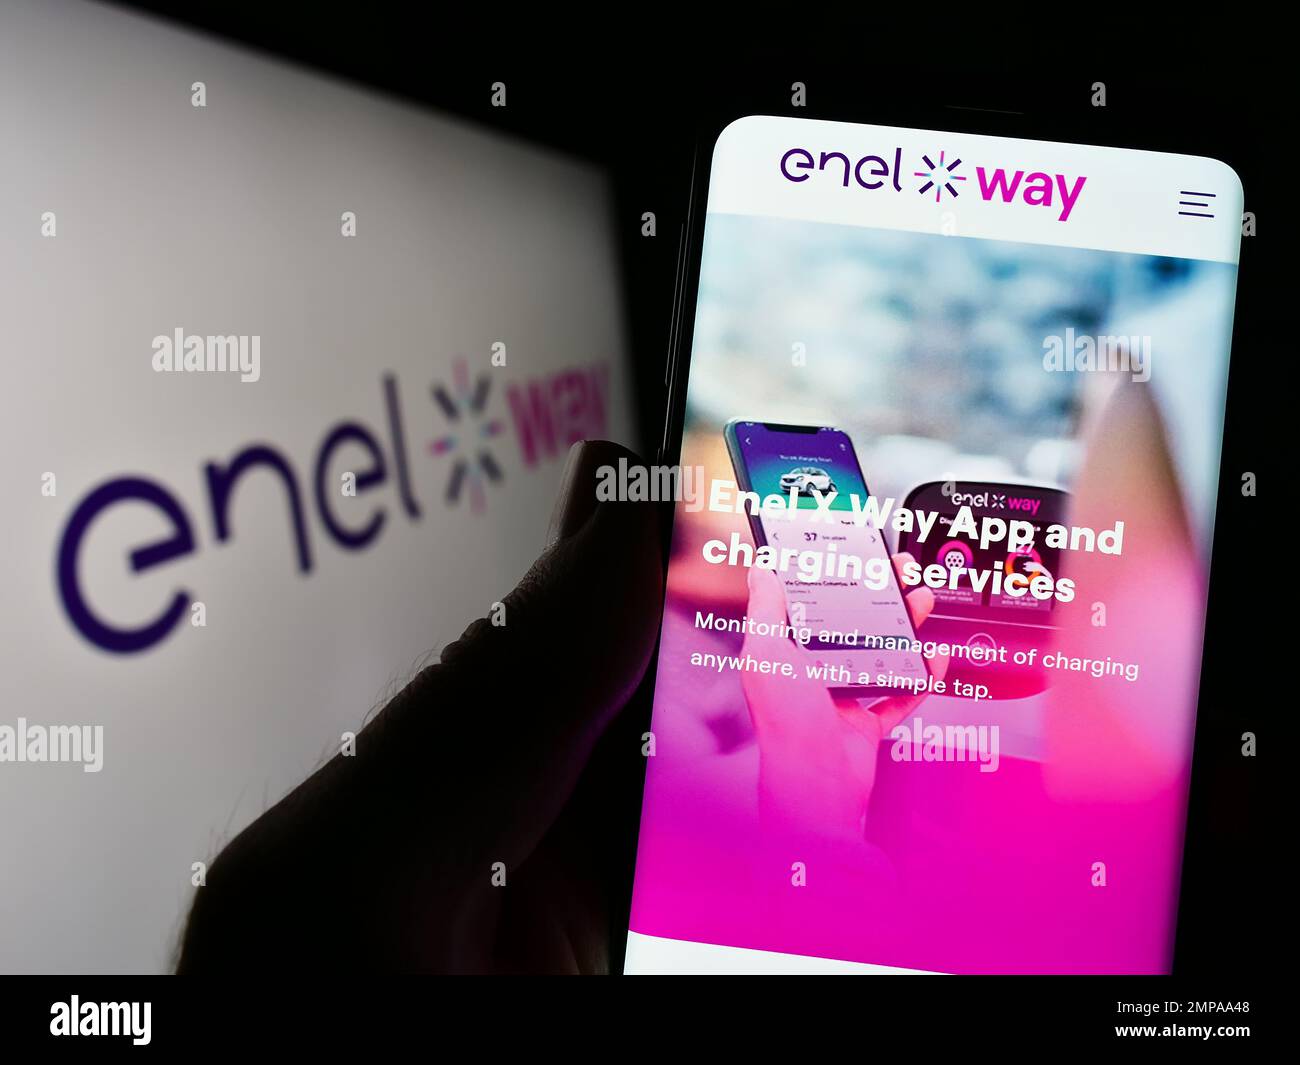 Persona che tiene il cellulare con pagina web della società italiana di mobilità elettrica Enel X Way sullo schermo con logo. Messa a fuoco al centro del display del telefono. Foto Stock